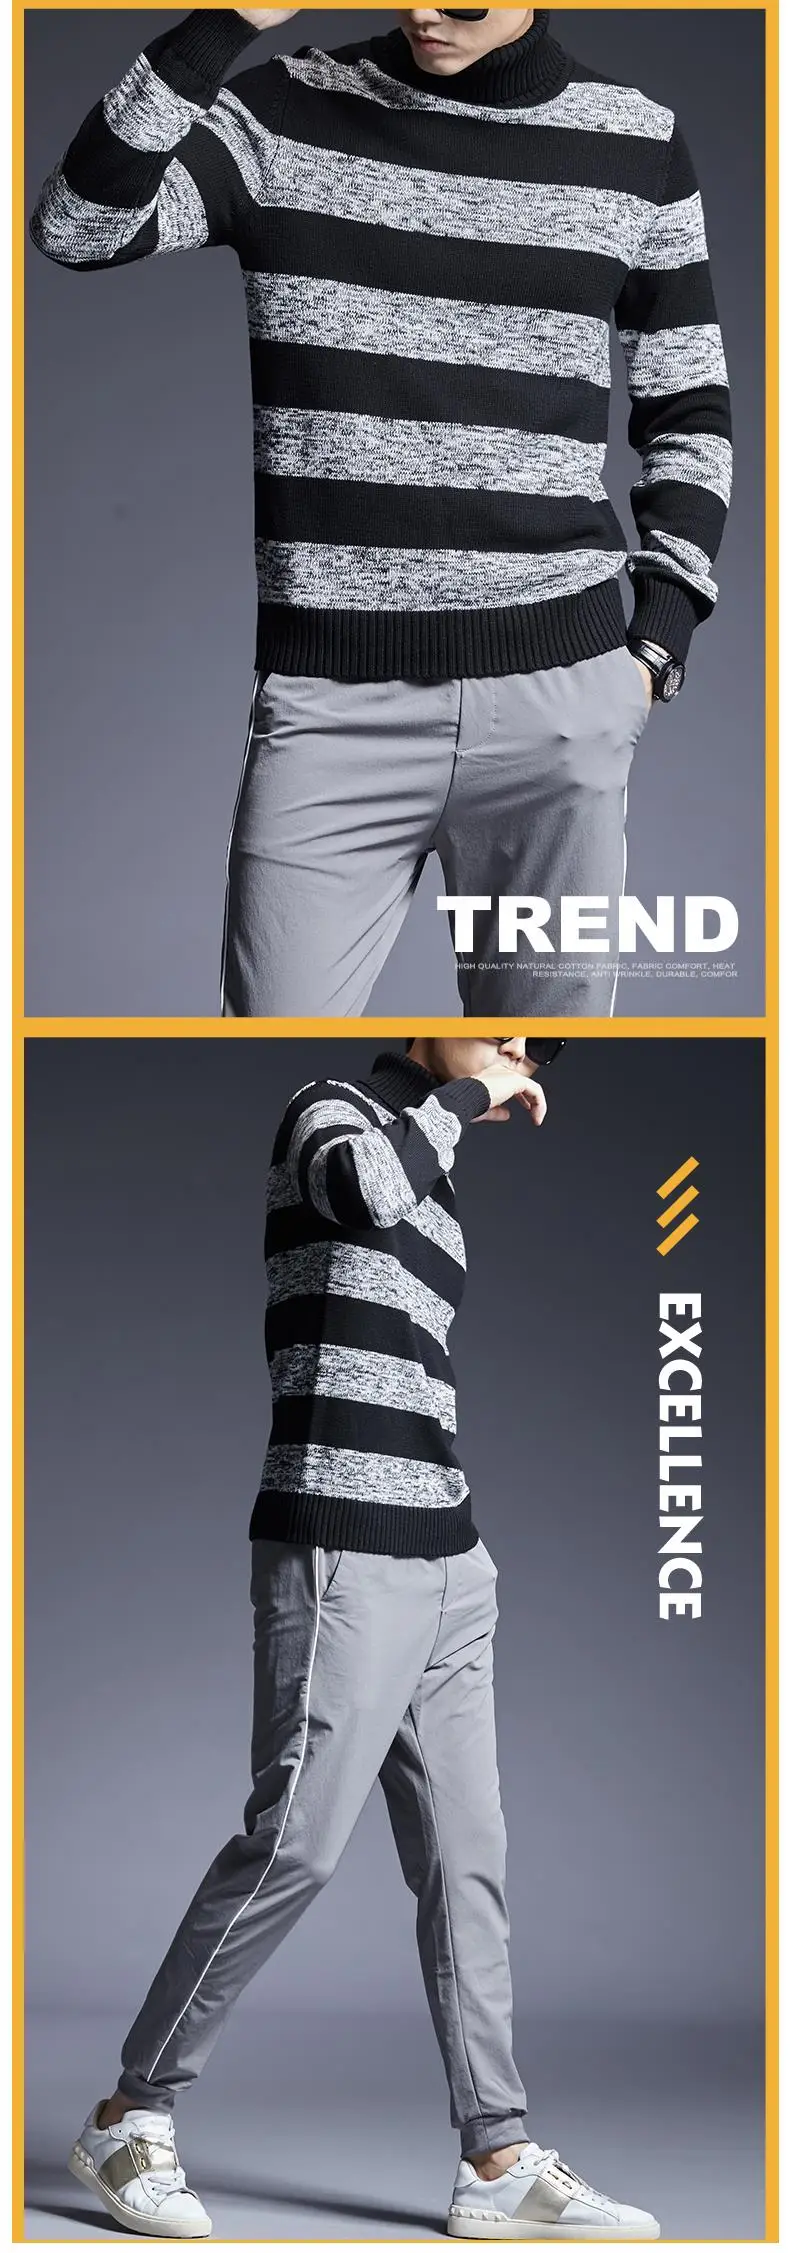 2019 новый модный бренд свитер для мужчин пуловер Водолазка Slim Fit вязаные Джемперы теплый Осень корейский стиль повседневное одежда